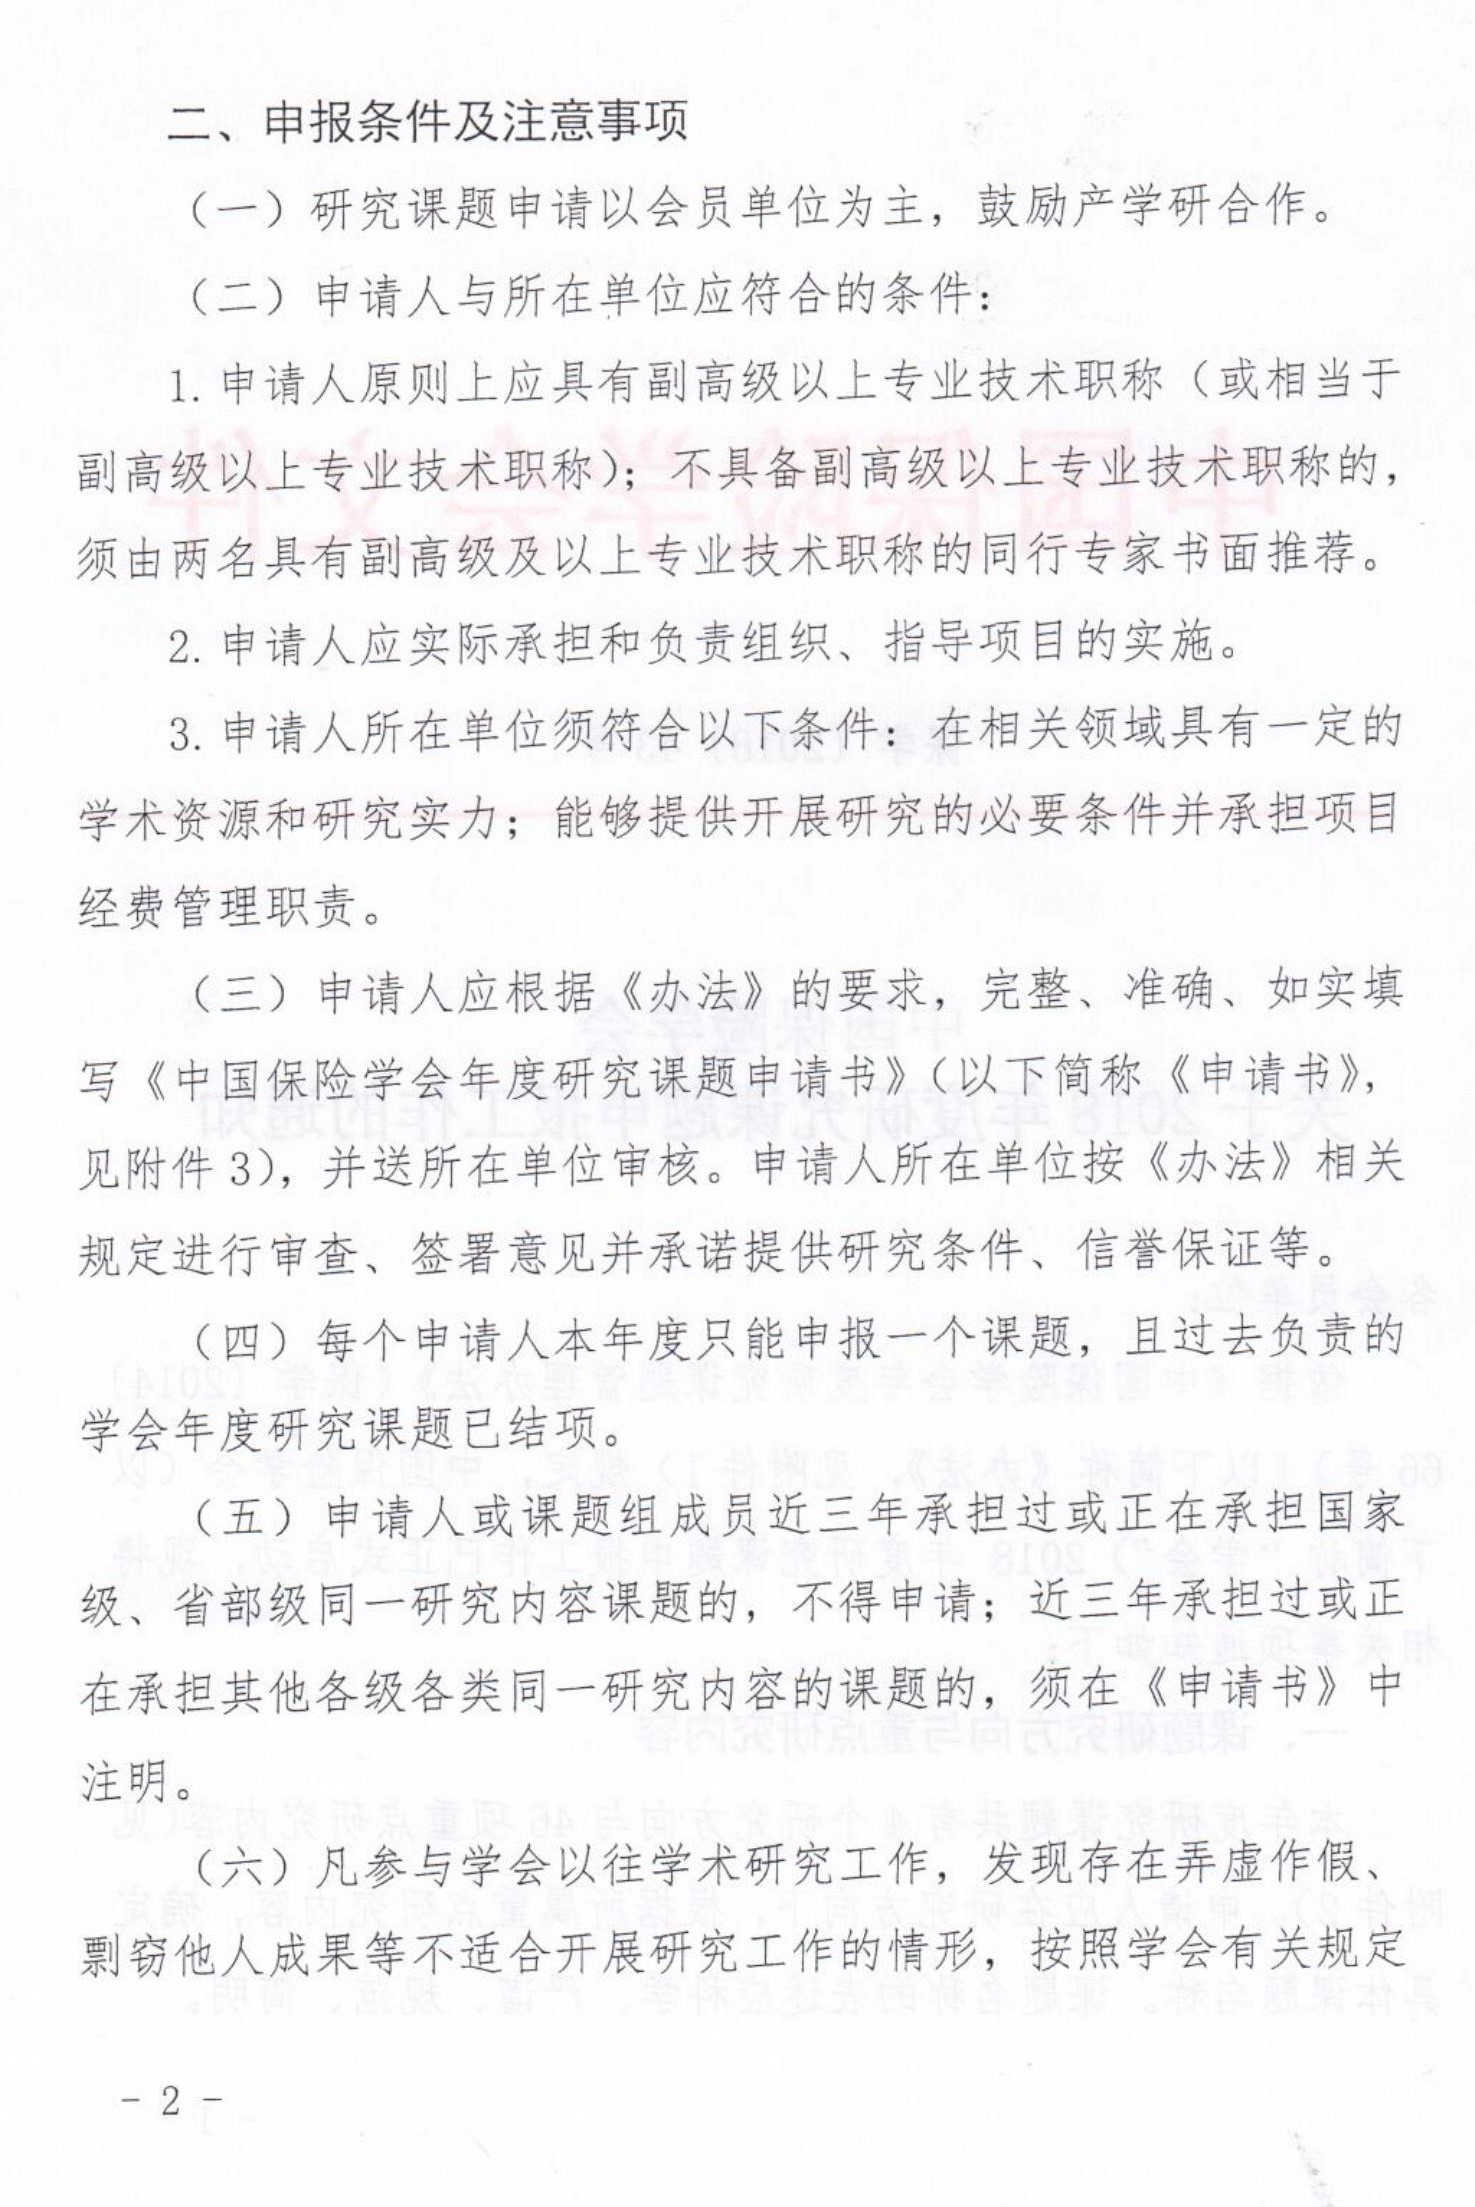 中国保险学会关于2018年度研究课题申报工作的通知_2.jpg